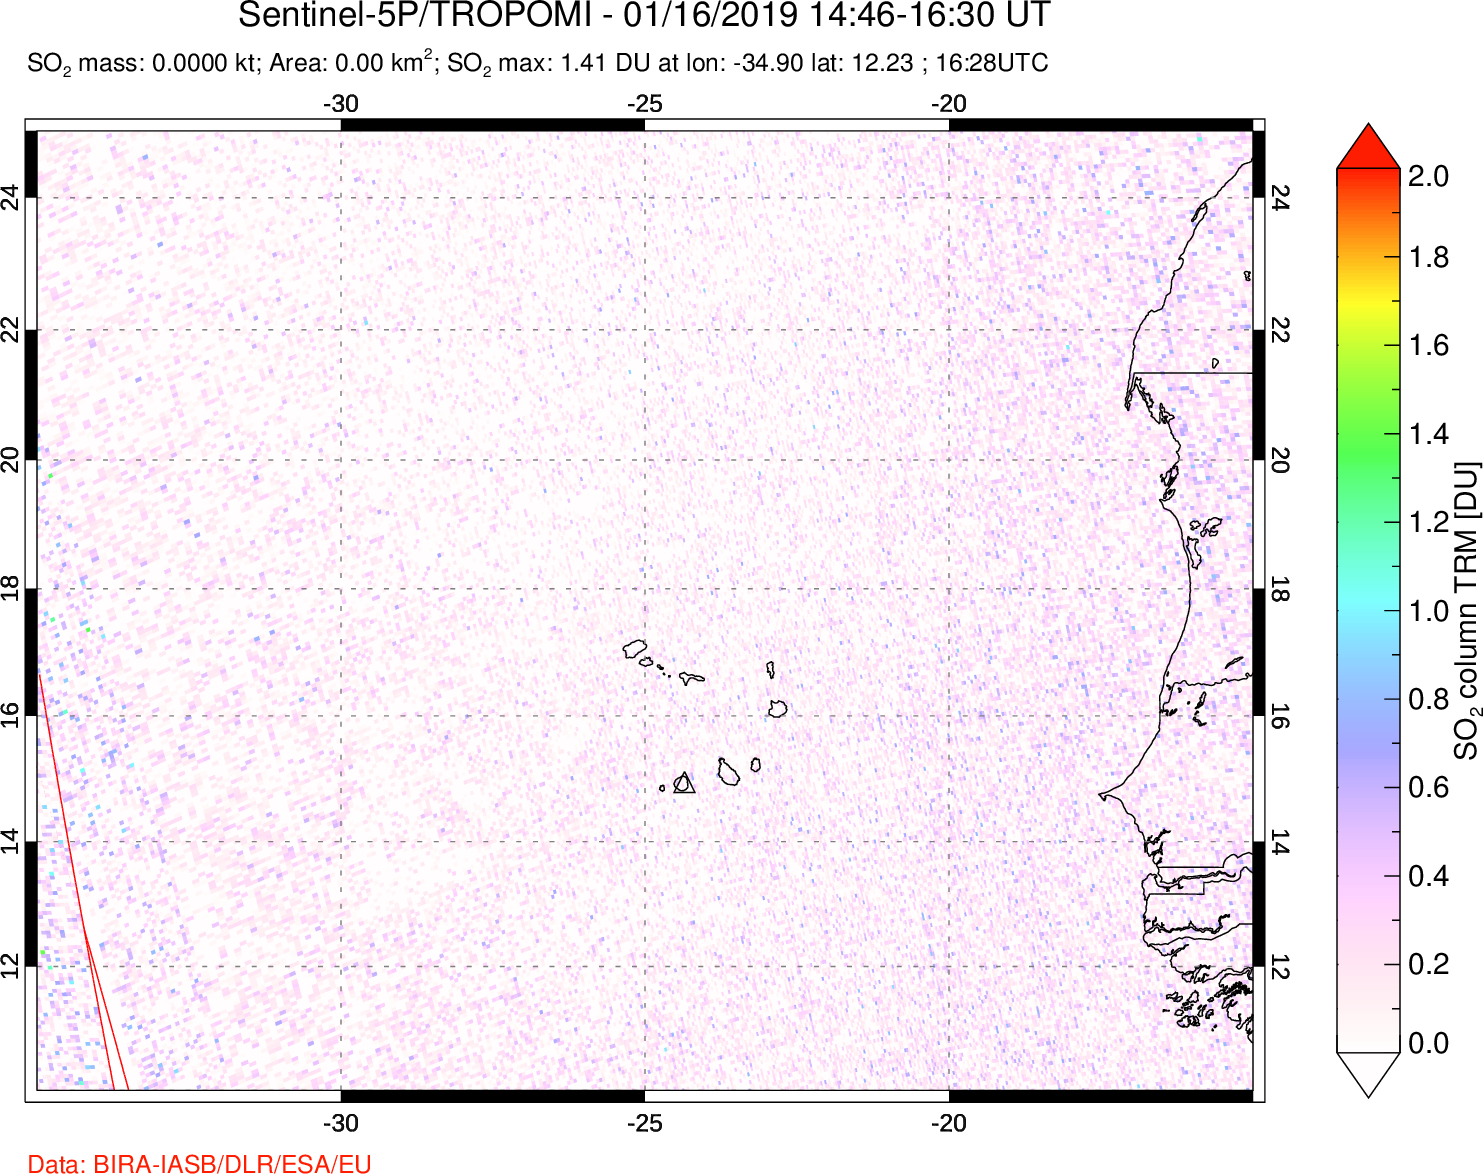 A sulfur dioxide image over Cape Verde Islands on Jan 16, 2019.